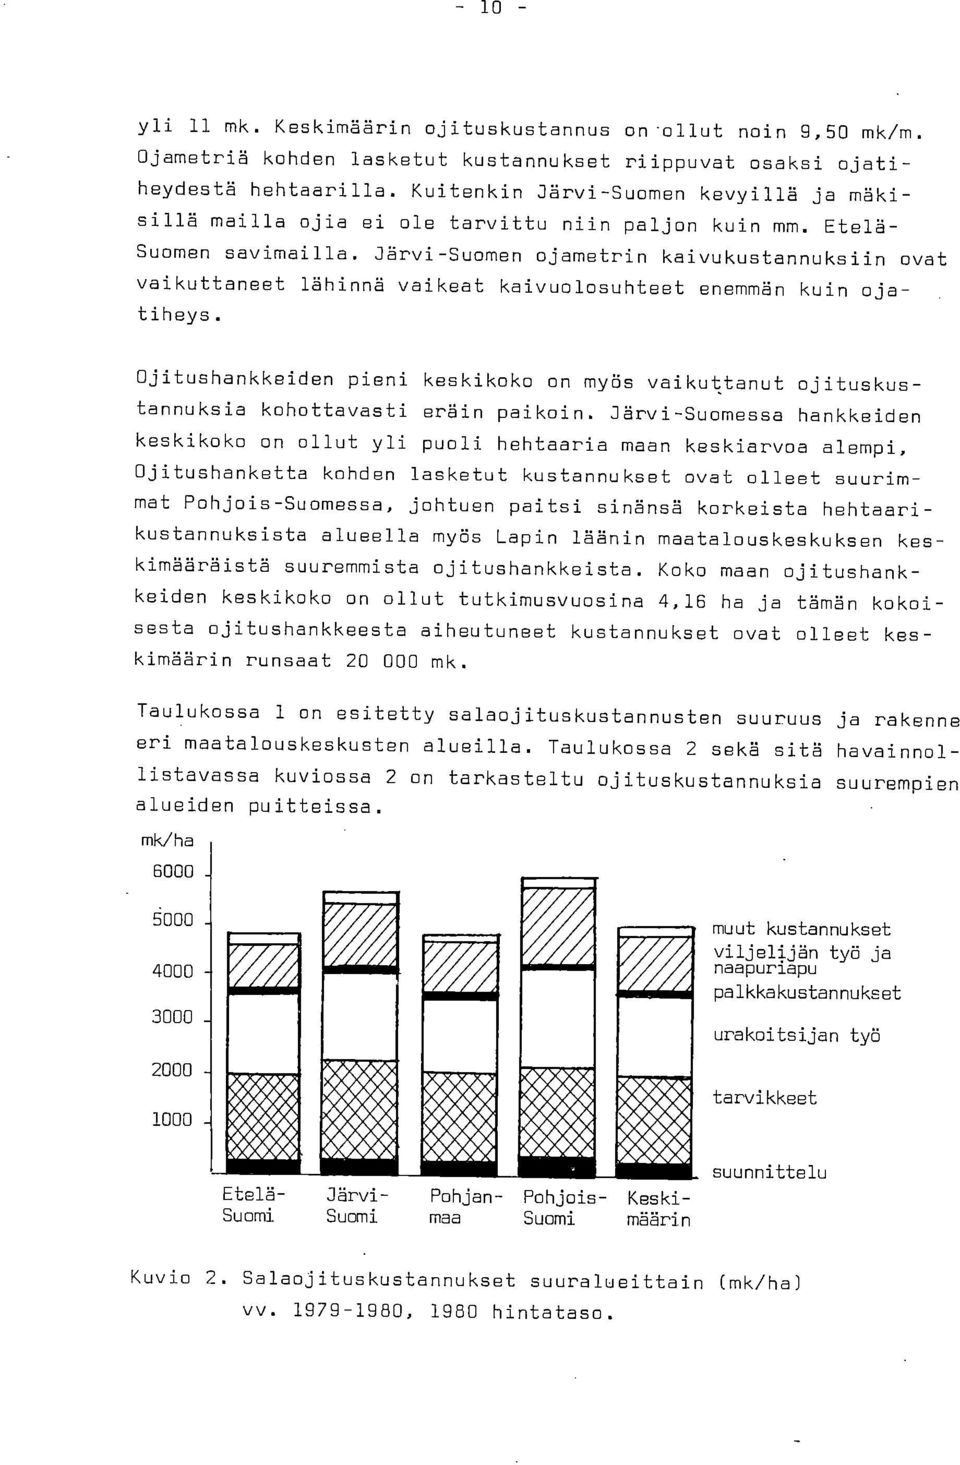 Järvi-Suomen ojametrin kaivukustannuksiin ovat vaikuttaneet lähinnä vaikeat kaivuolosuhteet enemmän kuin ojatiheys.